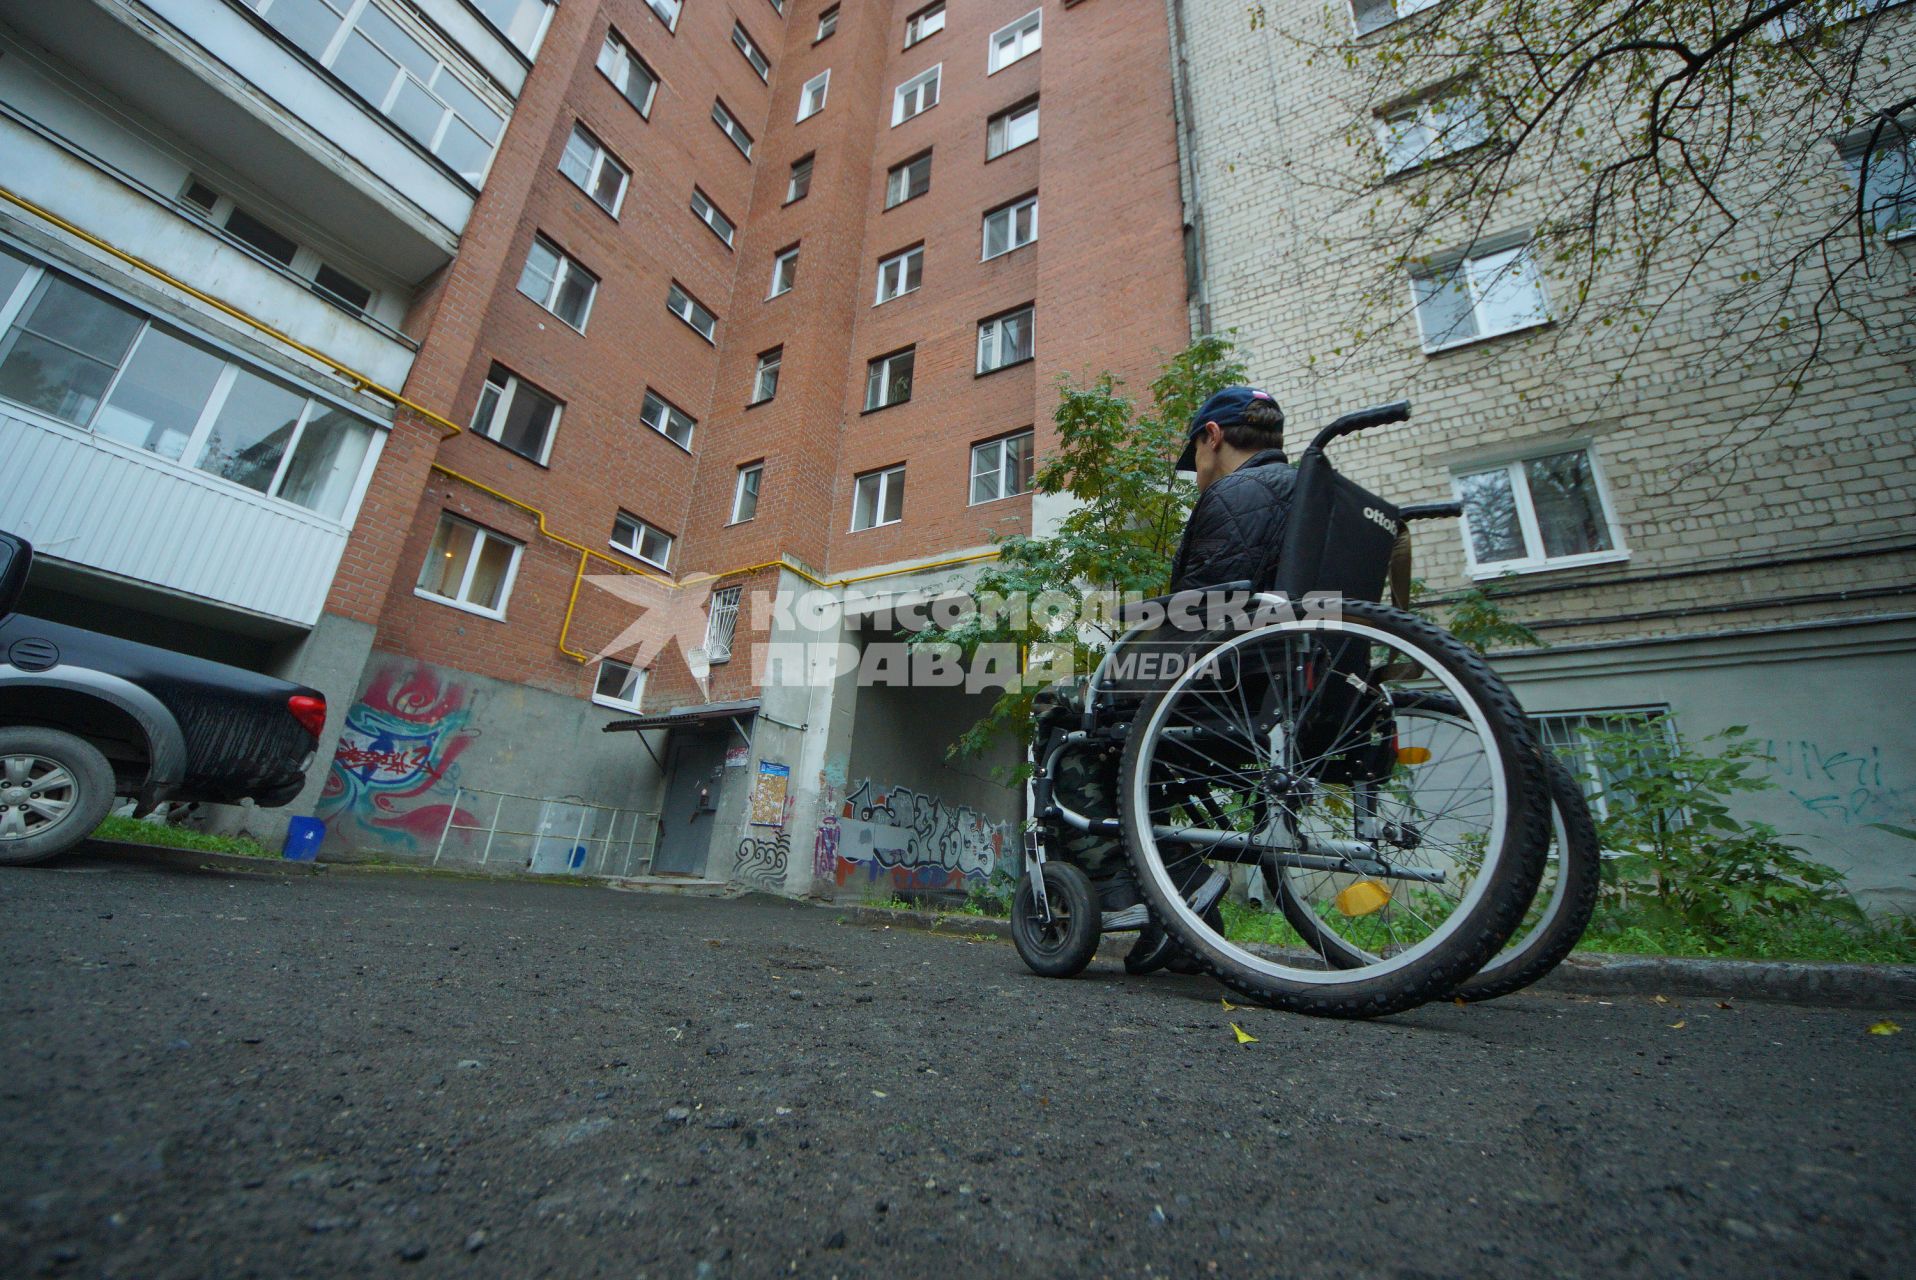 Екатеринбург. Инвалид-колясочник во время тестирования доступности городской среды для людей с ограниченными возможностями